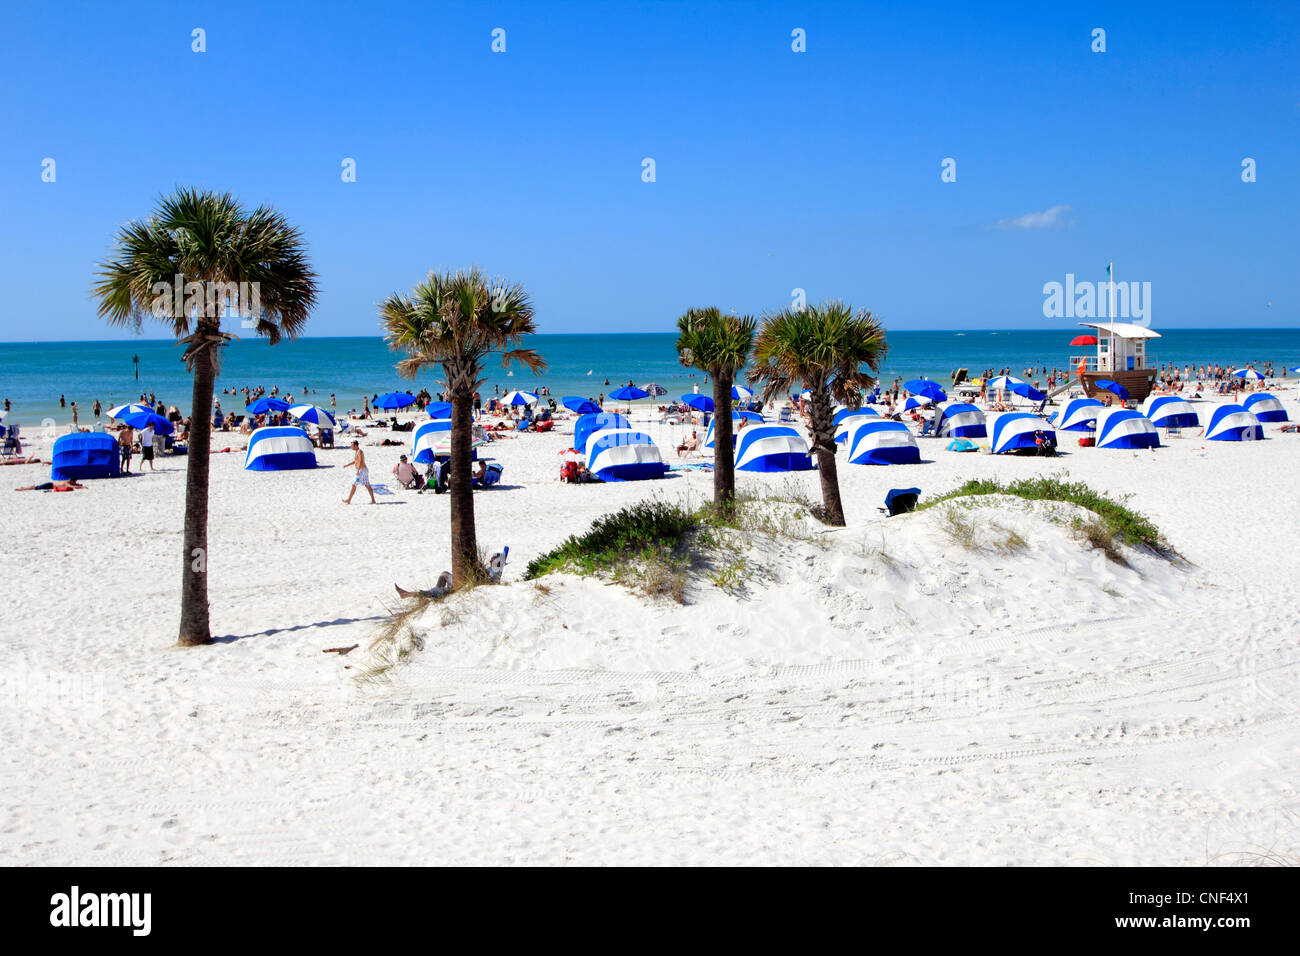 Clearwater Beach e area del resort, centrale ovest della costa del golfo, Florida, Stati Uniti d'America Foto Stock